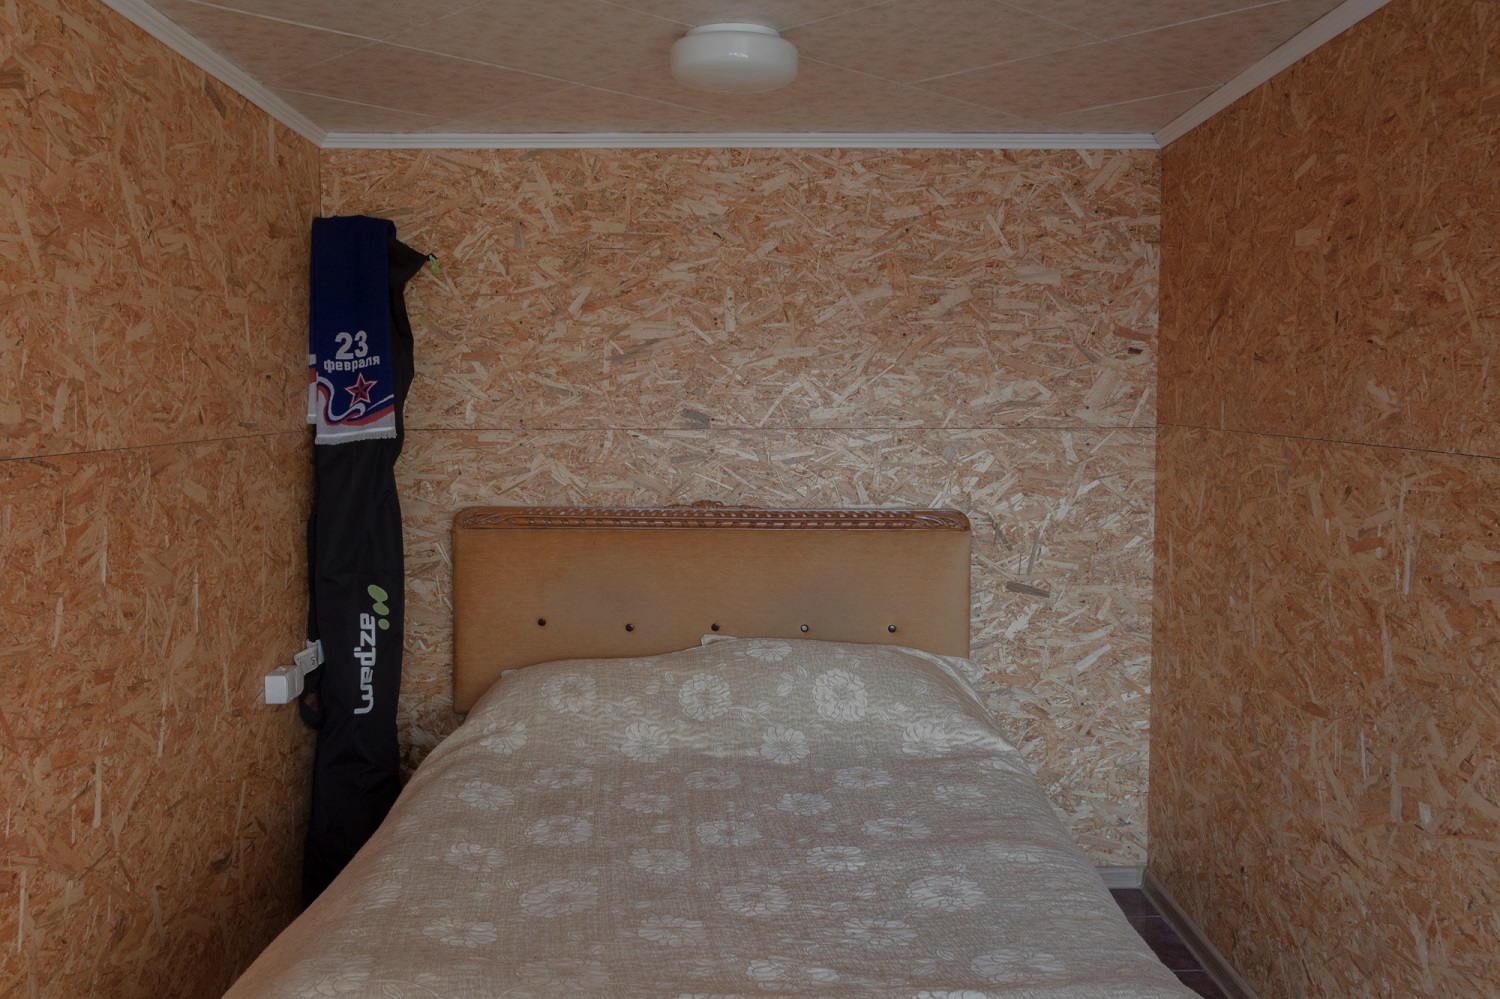 Schlafzimmer in dreistöckiger Garage / Foto © Oksana Ozgur